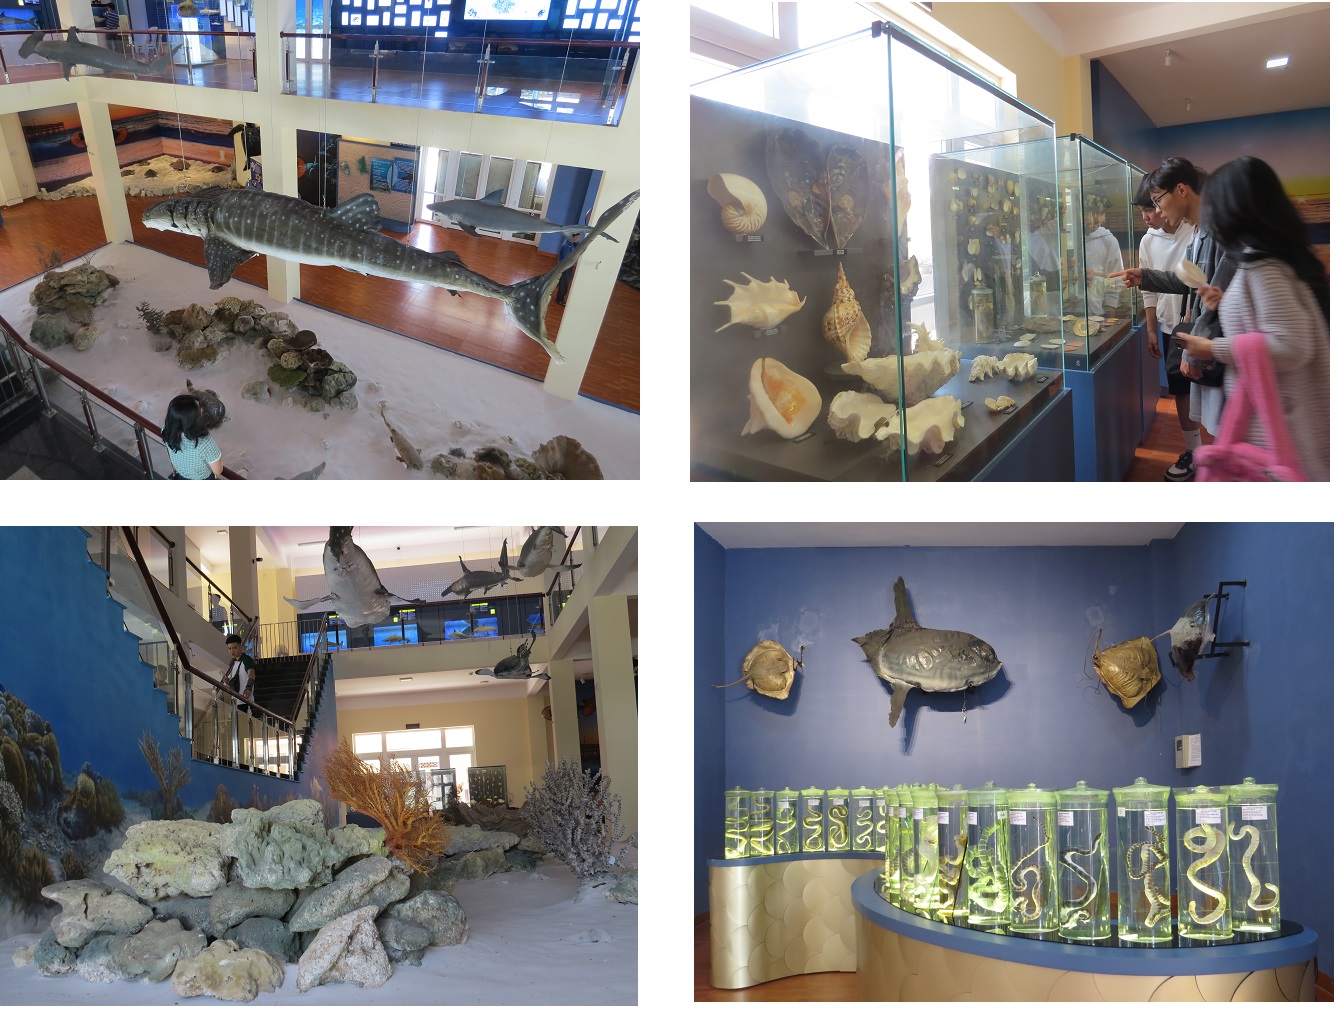 Viện Hải dương học cũng đã đưa vào hoạt động Khu trưng bày đa dạng sinh học biển 3 tầng, rộng hơn 600m2, trưng bày hàng chục ngàn mẫu sinh vật, khoáng vật, tiêu bản, thông tin về đa dạng sinh học biển Việt Nam. Khu trưng bày mô phỏng nơi sinh sống, bãi đẻ của rùa biển, các sinh vật như thân mềm, rắn biển Việt Nam, mô hình rạn san hô ở Trường Sa…